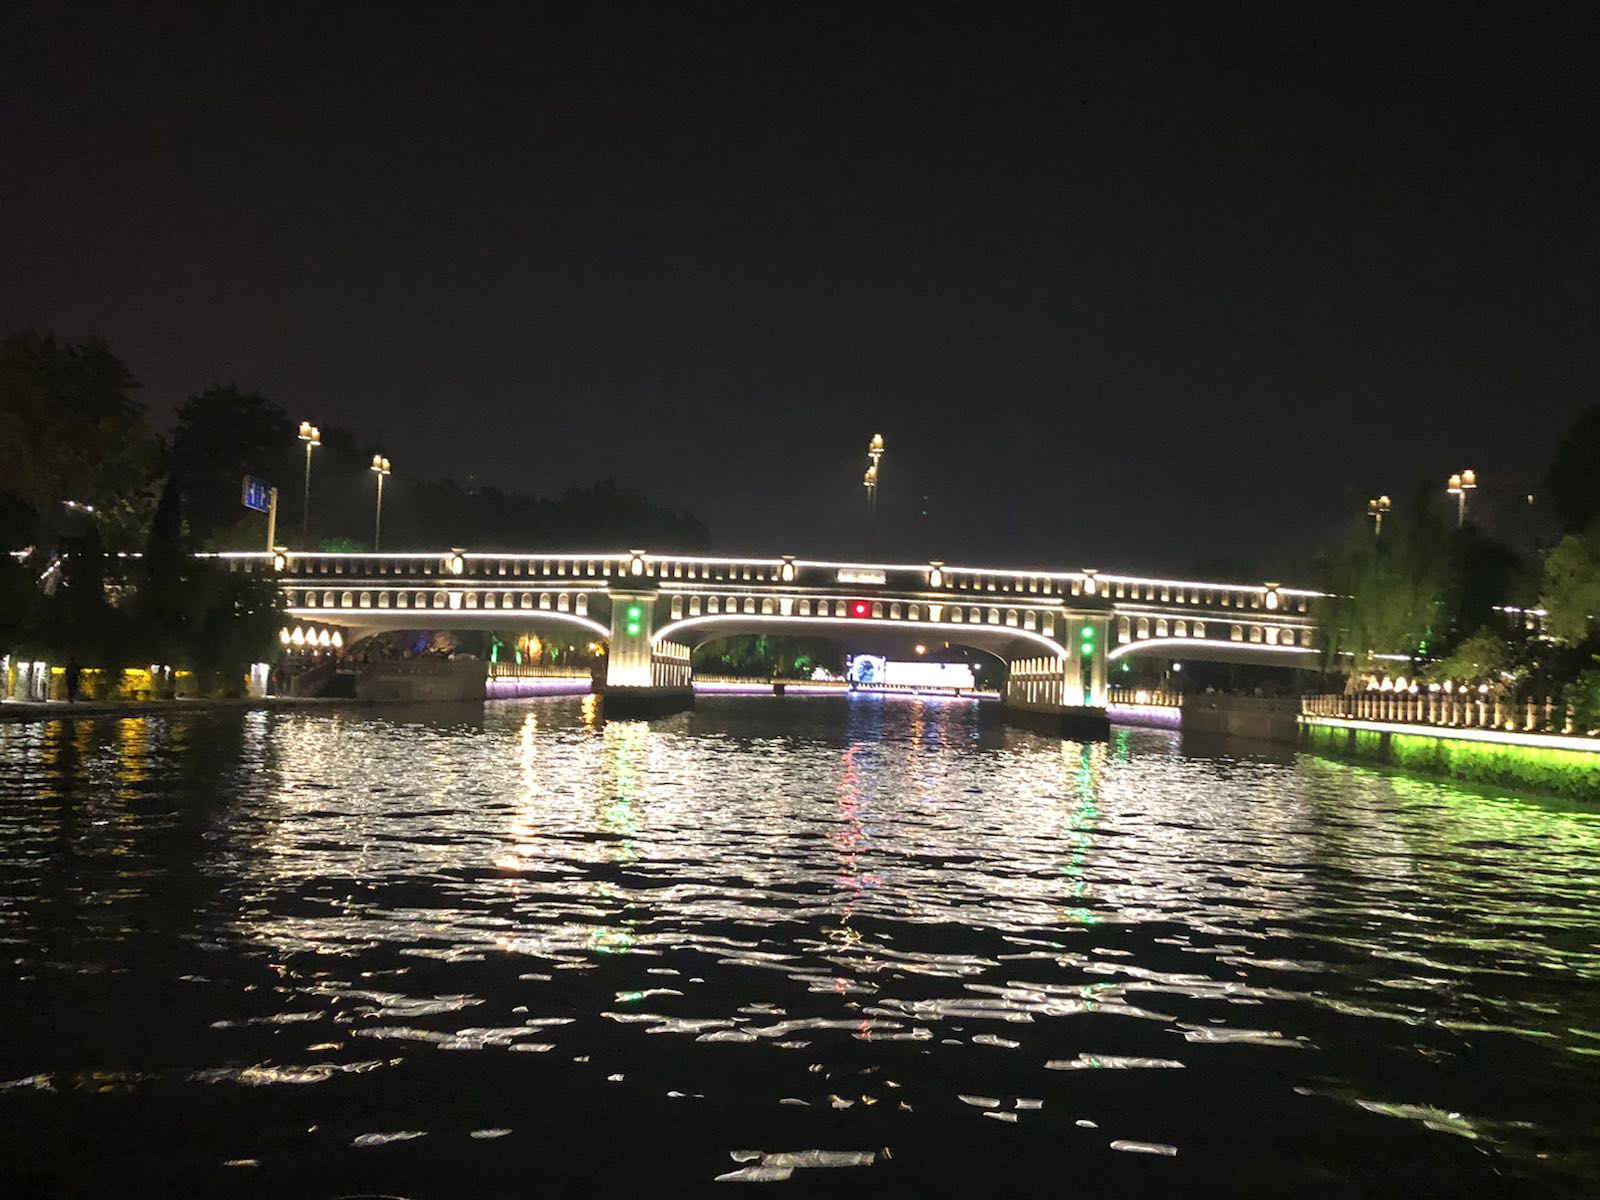 古运河夜游感觉一般，感受不到古城的底蕴，运河上的桥历史感没有。